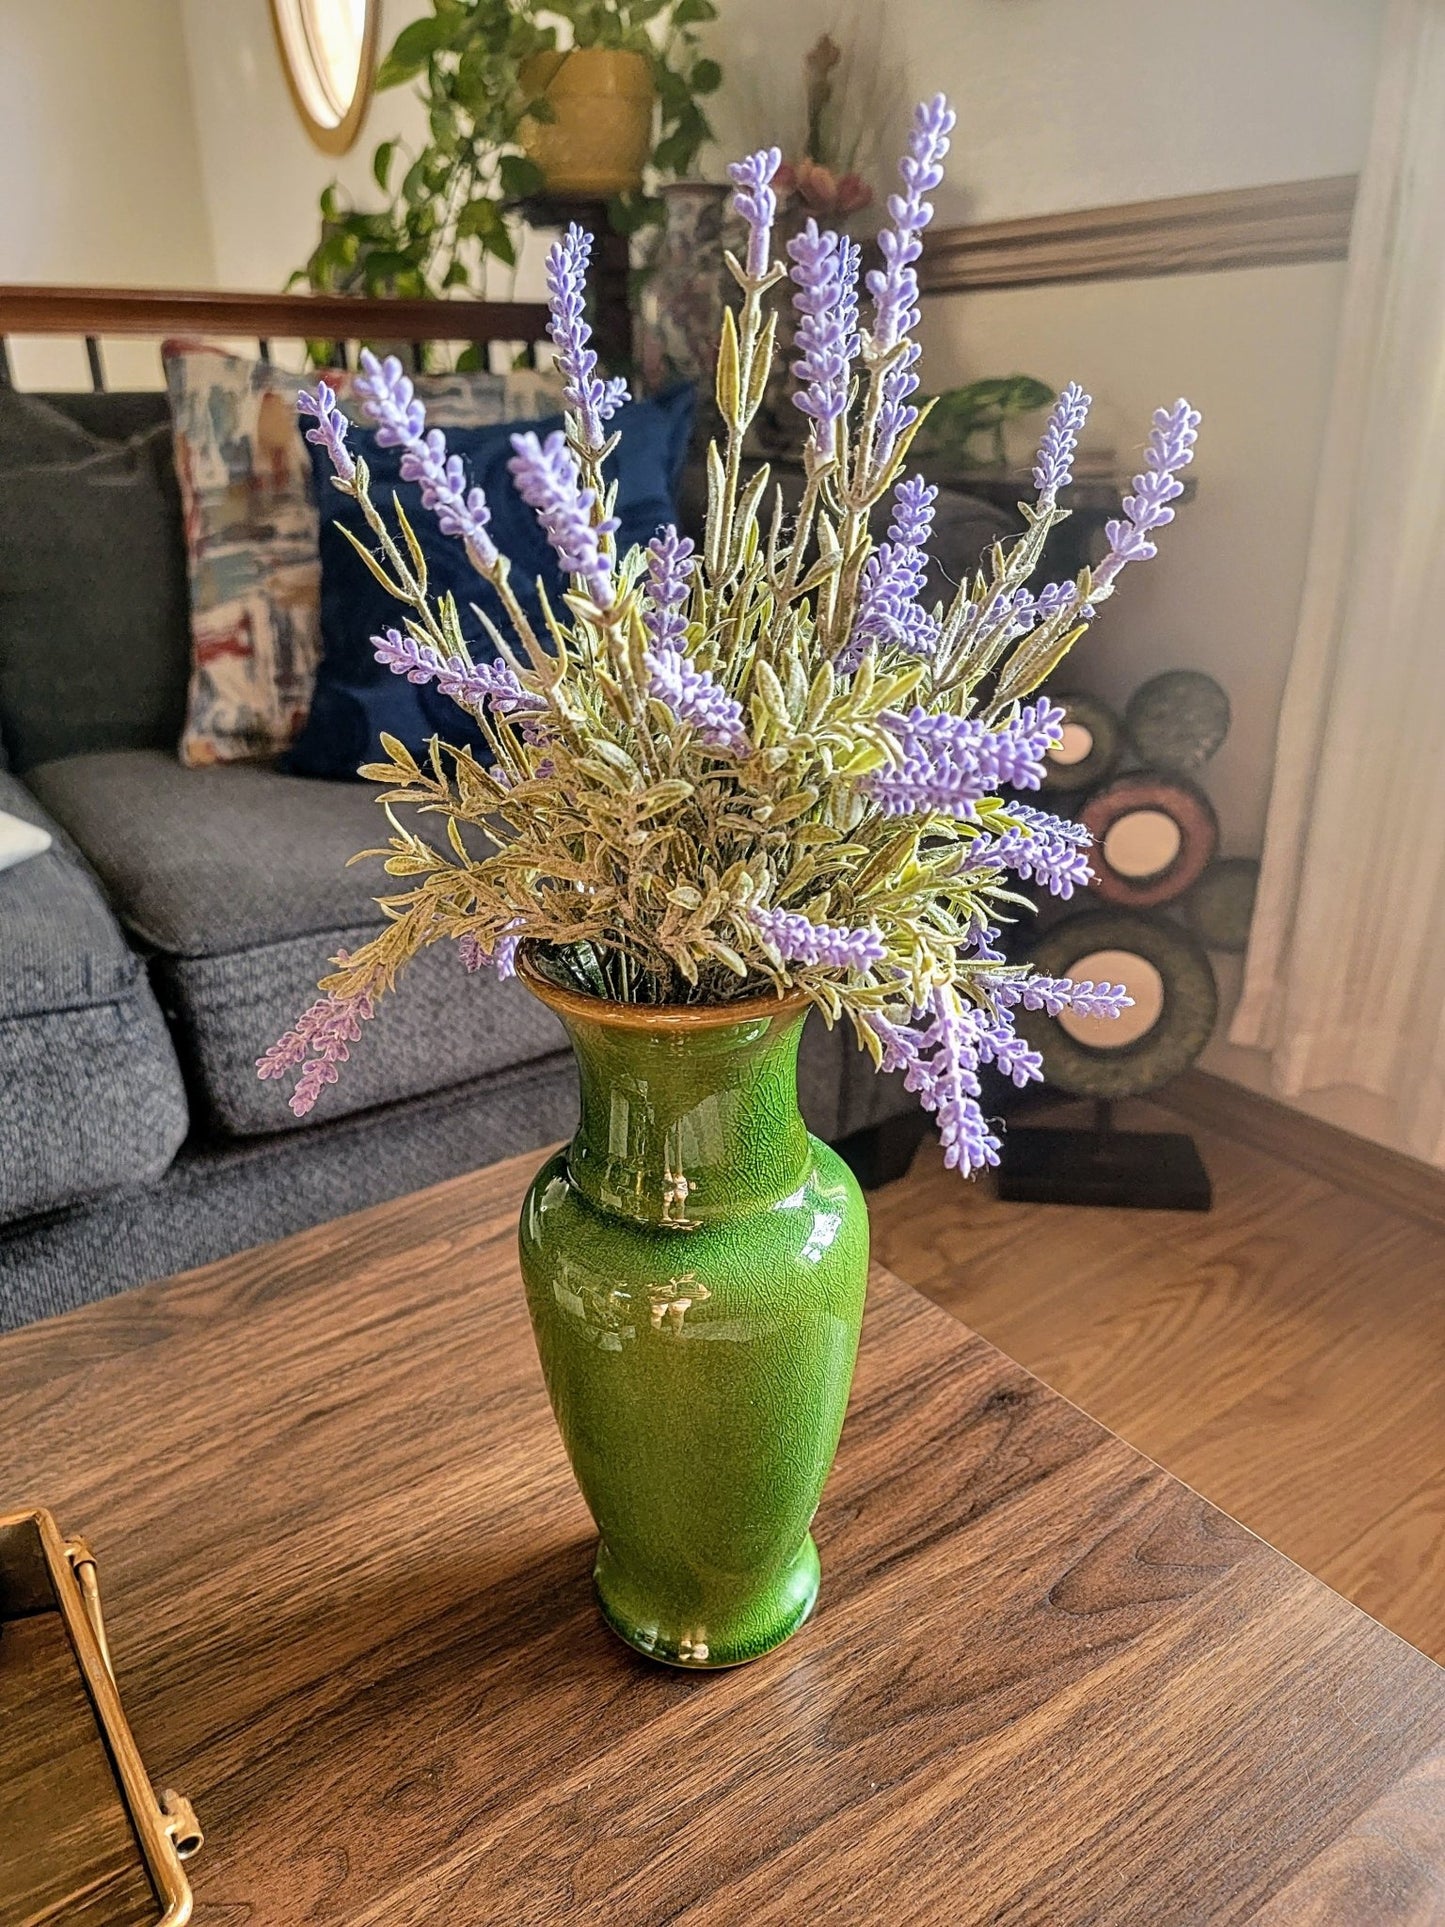 Lavendar in Green Vase - Smash's Stashes